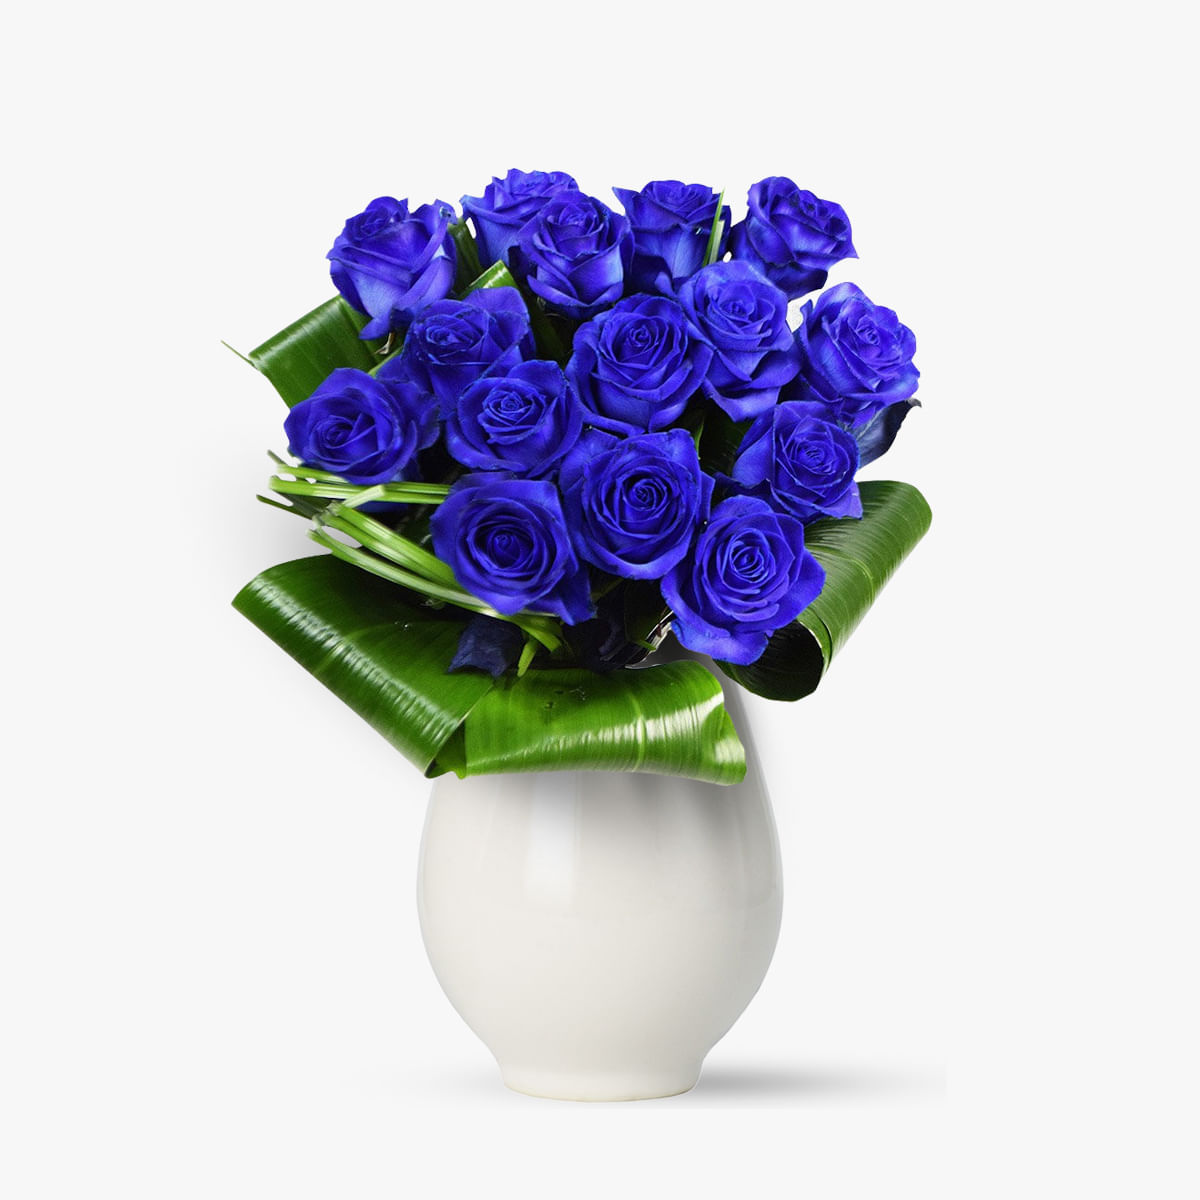 Buchet de 15 trandafiri albastri – Standard albastri